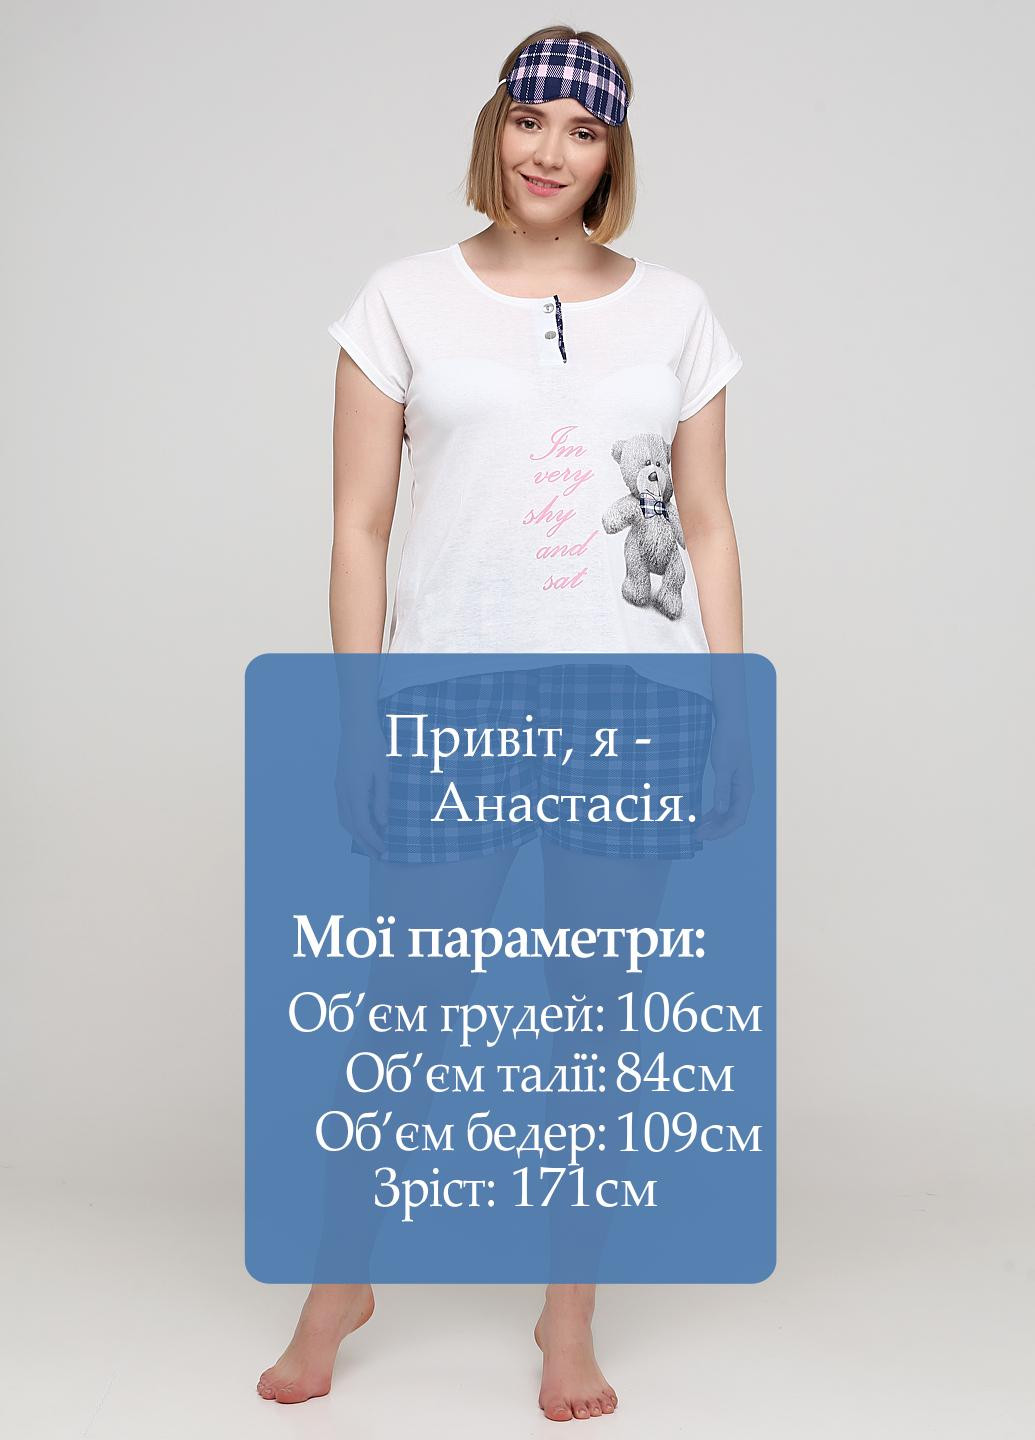 Молочная всесезон пижама (футболка, шорты, маска для сна) футболка + шорты Трикомир